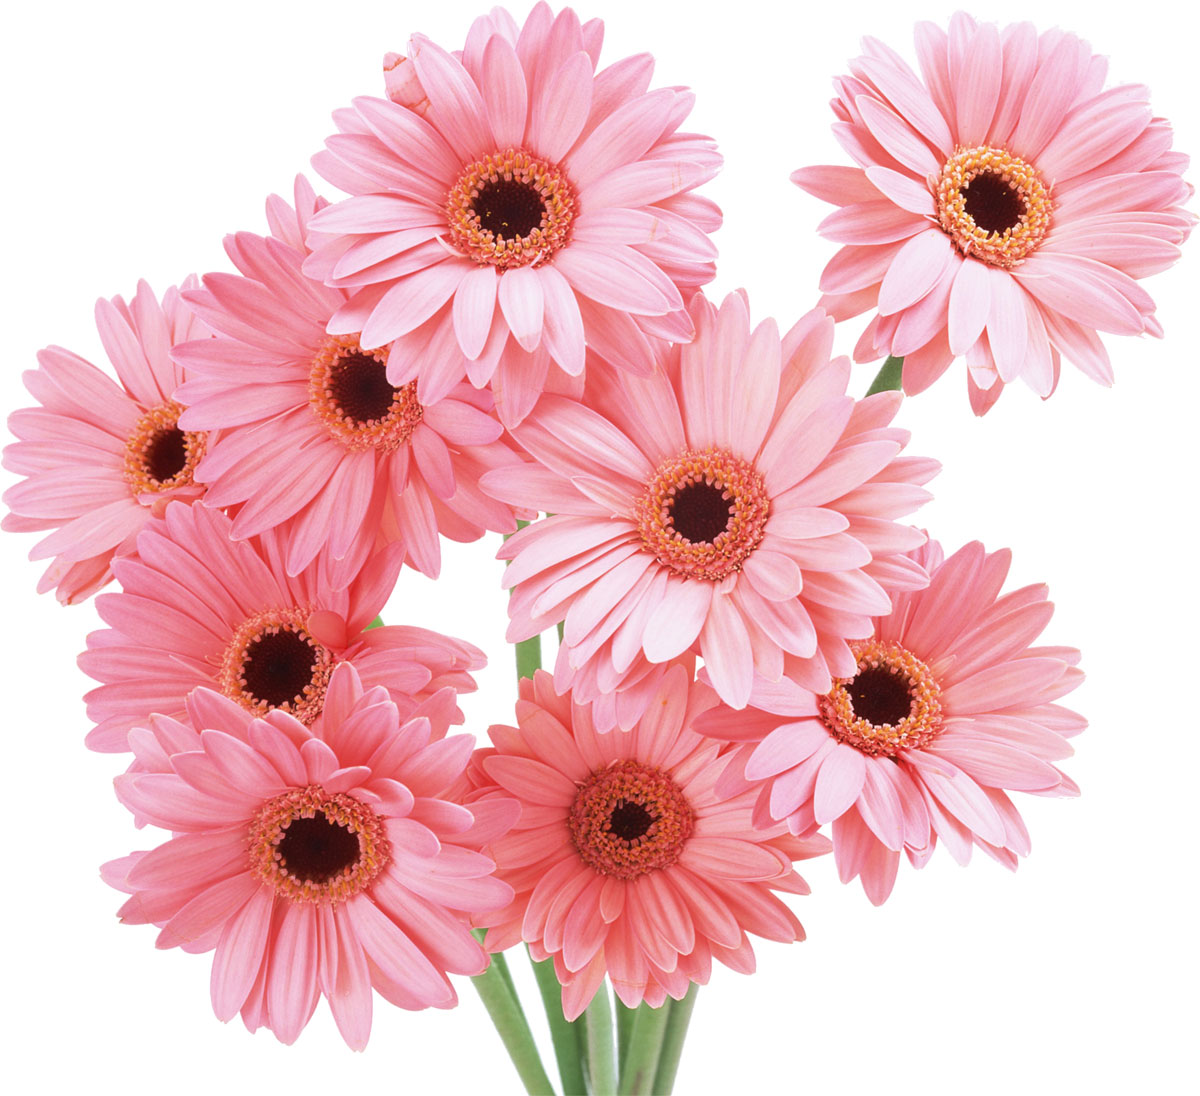 ピンクの花の写真 フリー素材 No 509 ガーベラ ピンク